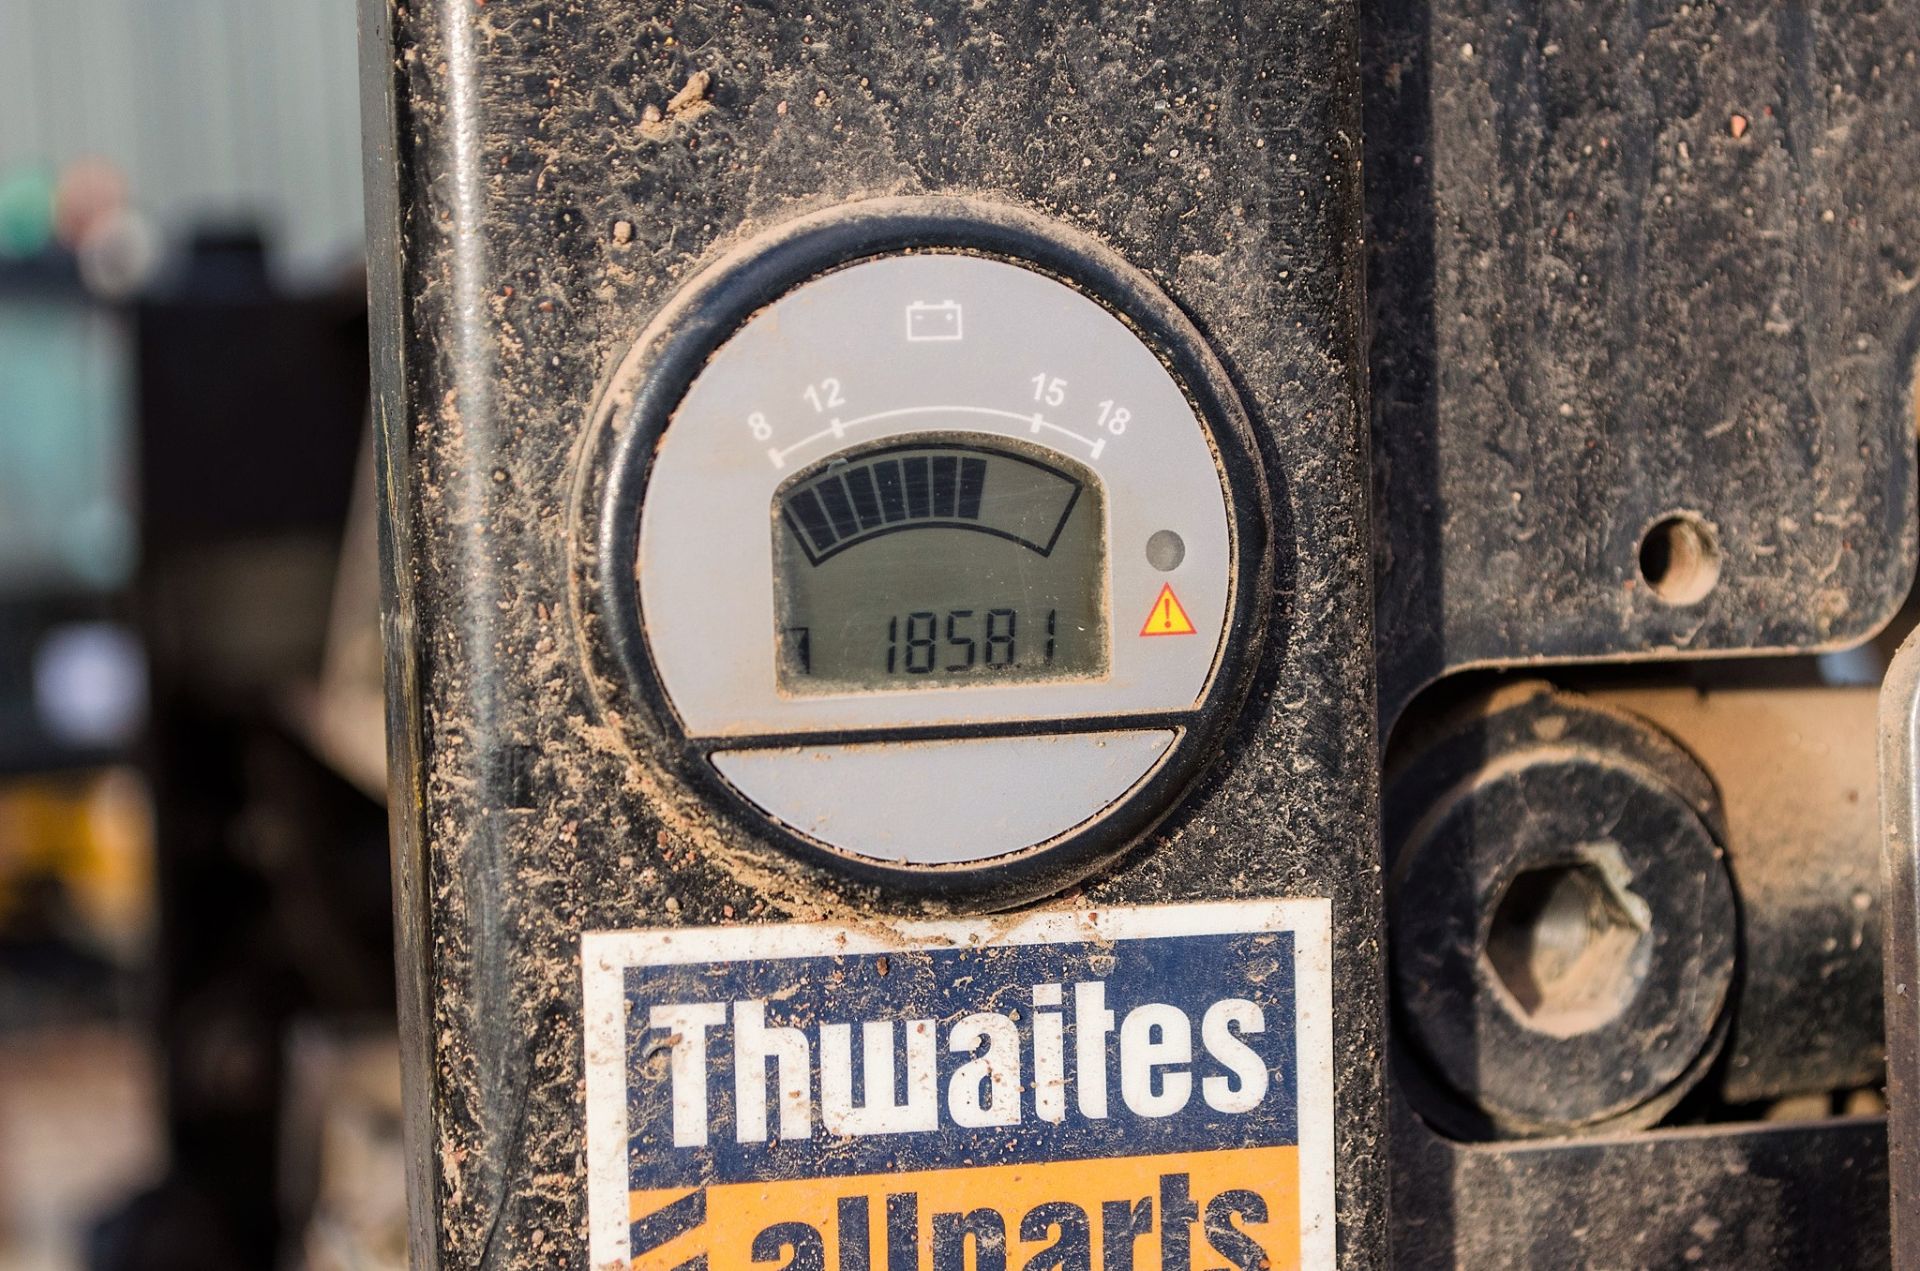 Thwaites 6 tonne swivel skip dumper Year: 2014 S/N: 1C7539 Recorded Hours: 1858 c/w V5C registration - Image 19 of 20